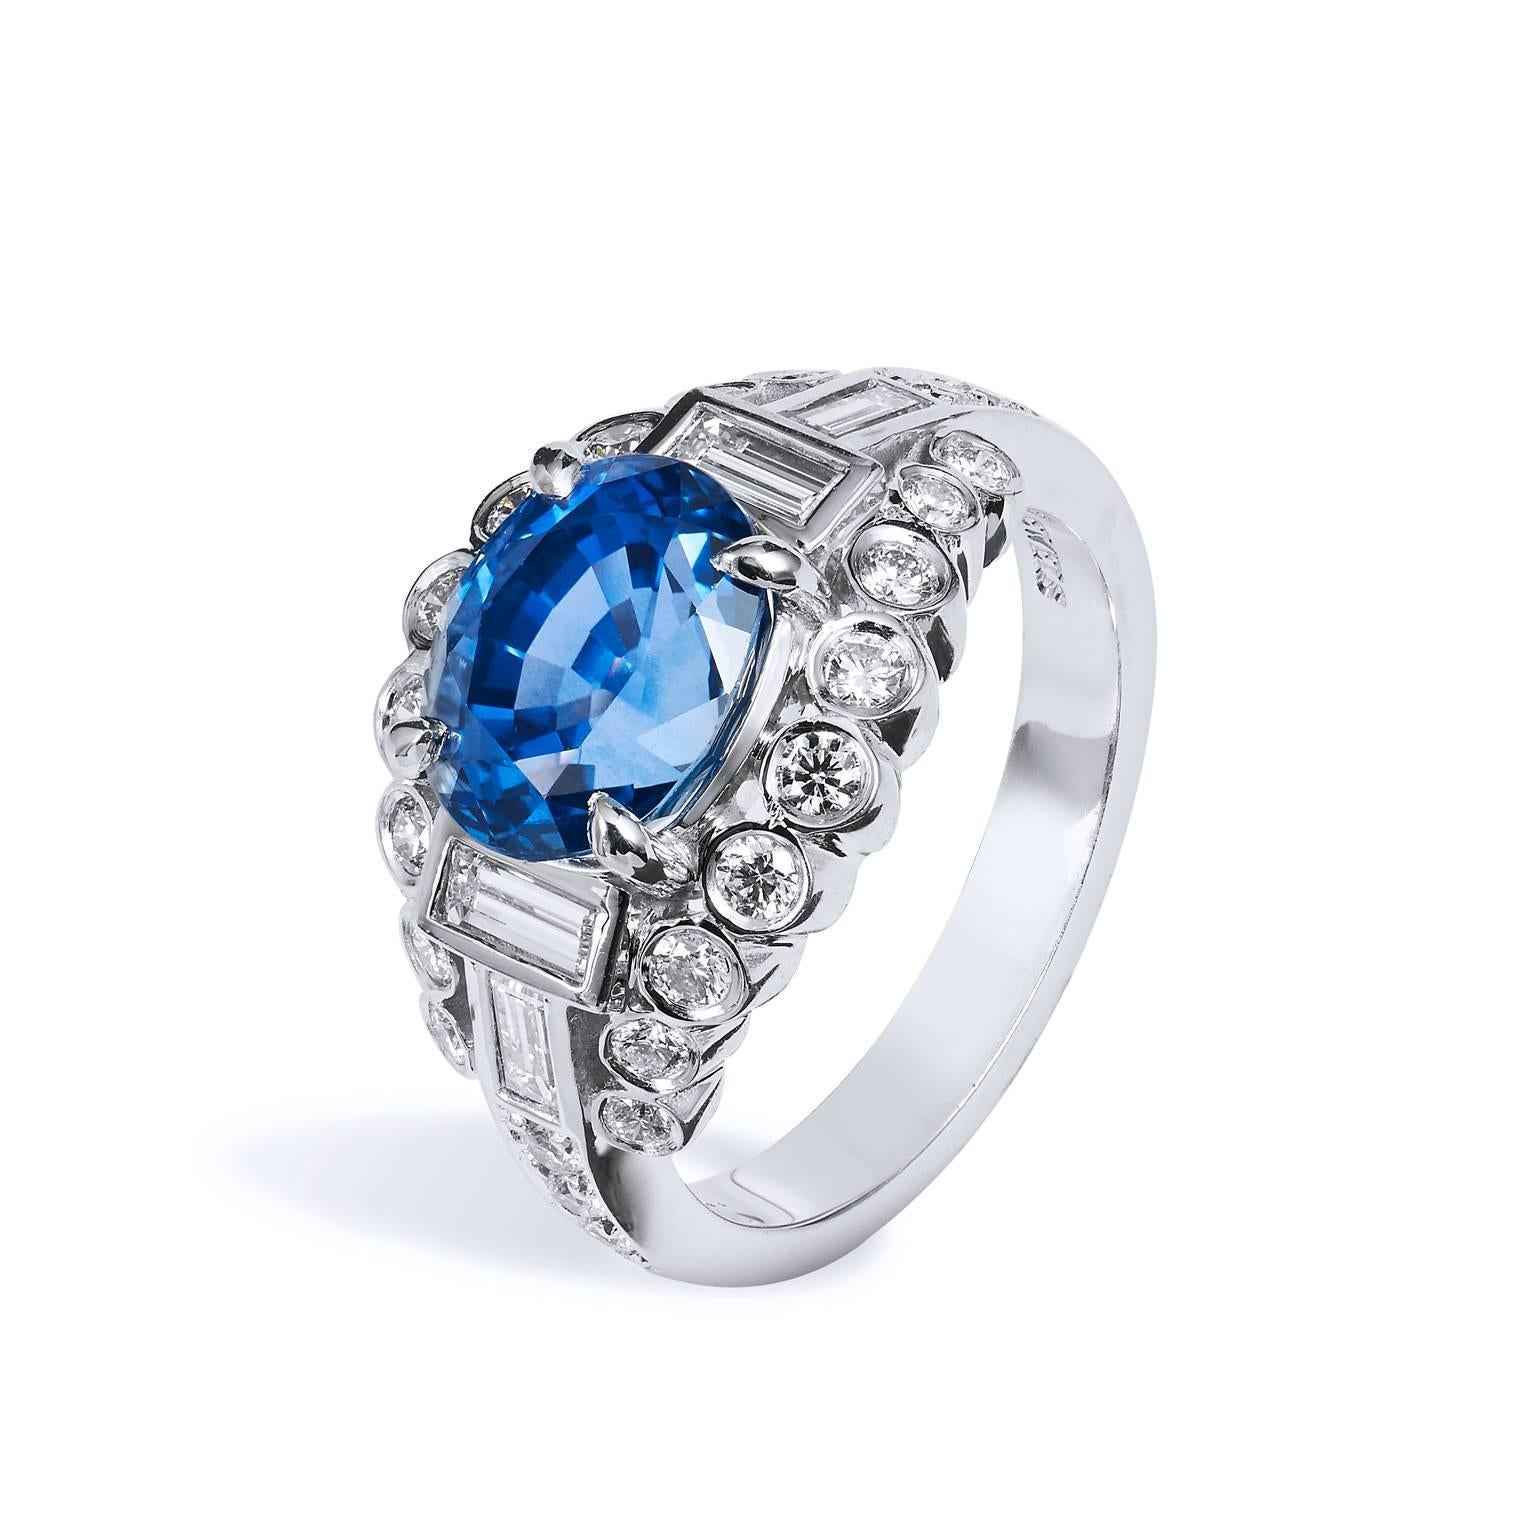 H & H 3.74 Carat Oval Ceylon Blue Sapphire and Diamond Ring 1